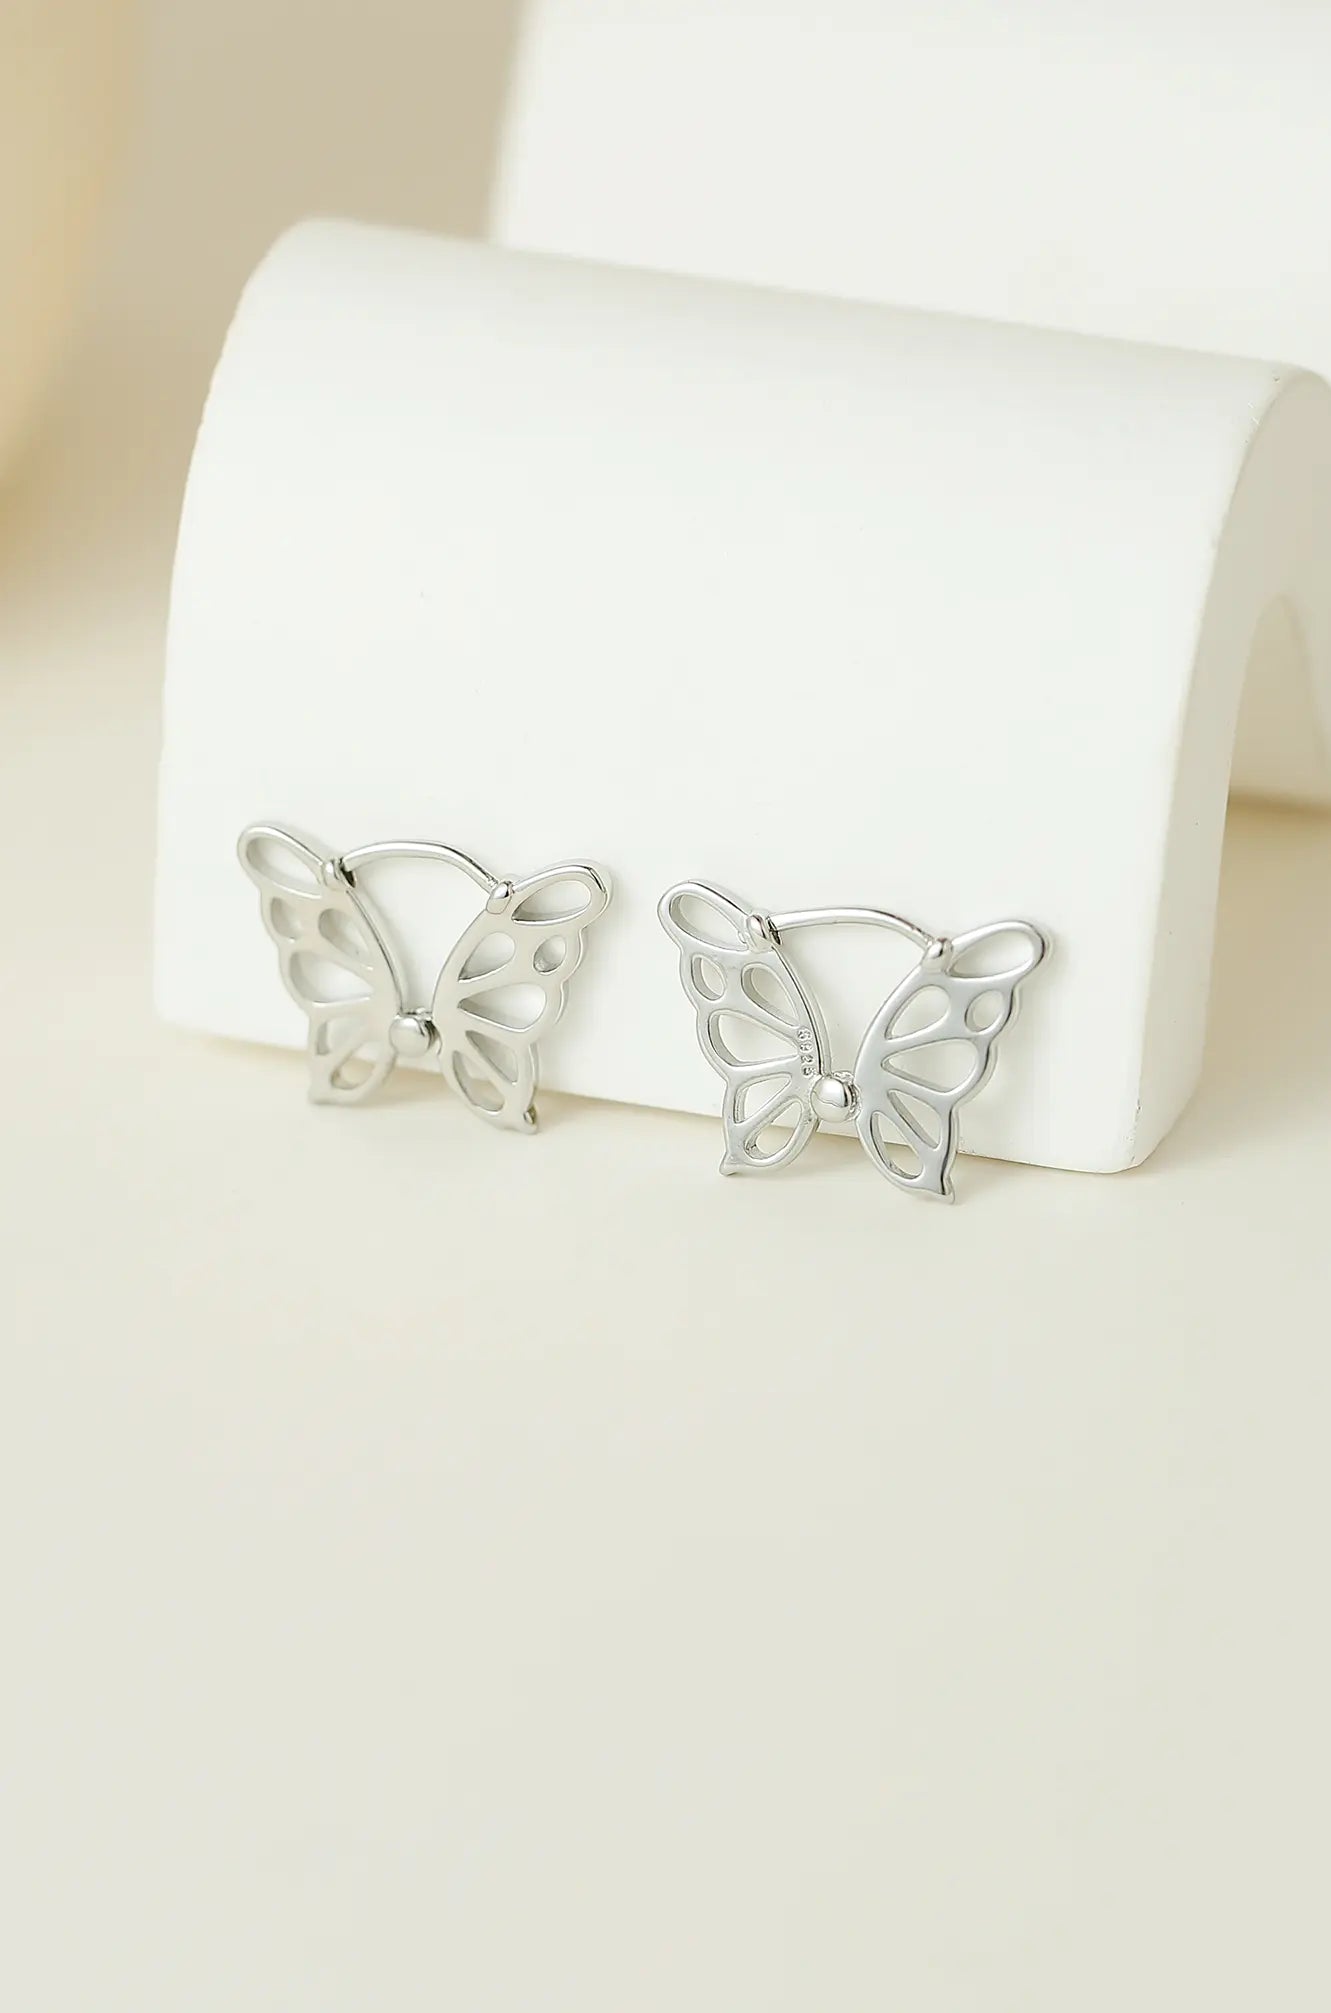 Butterfly Silhouette Earrings